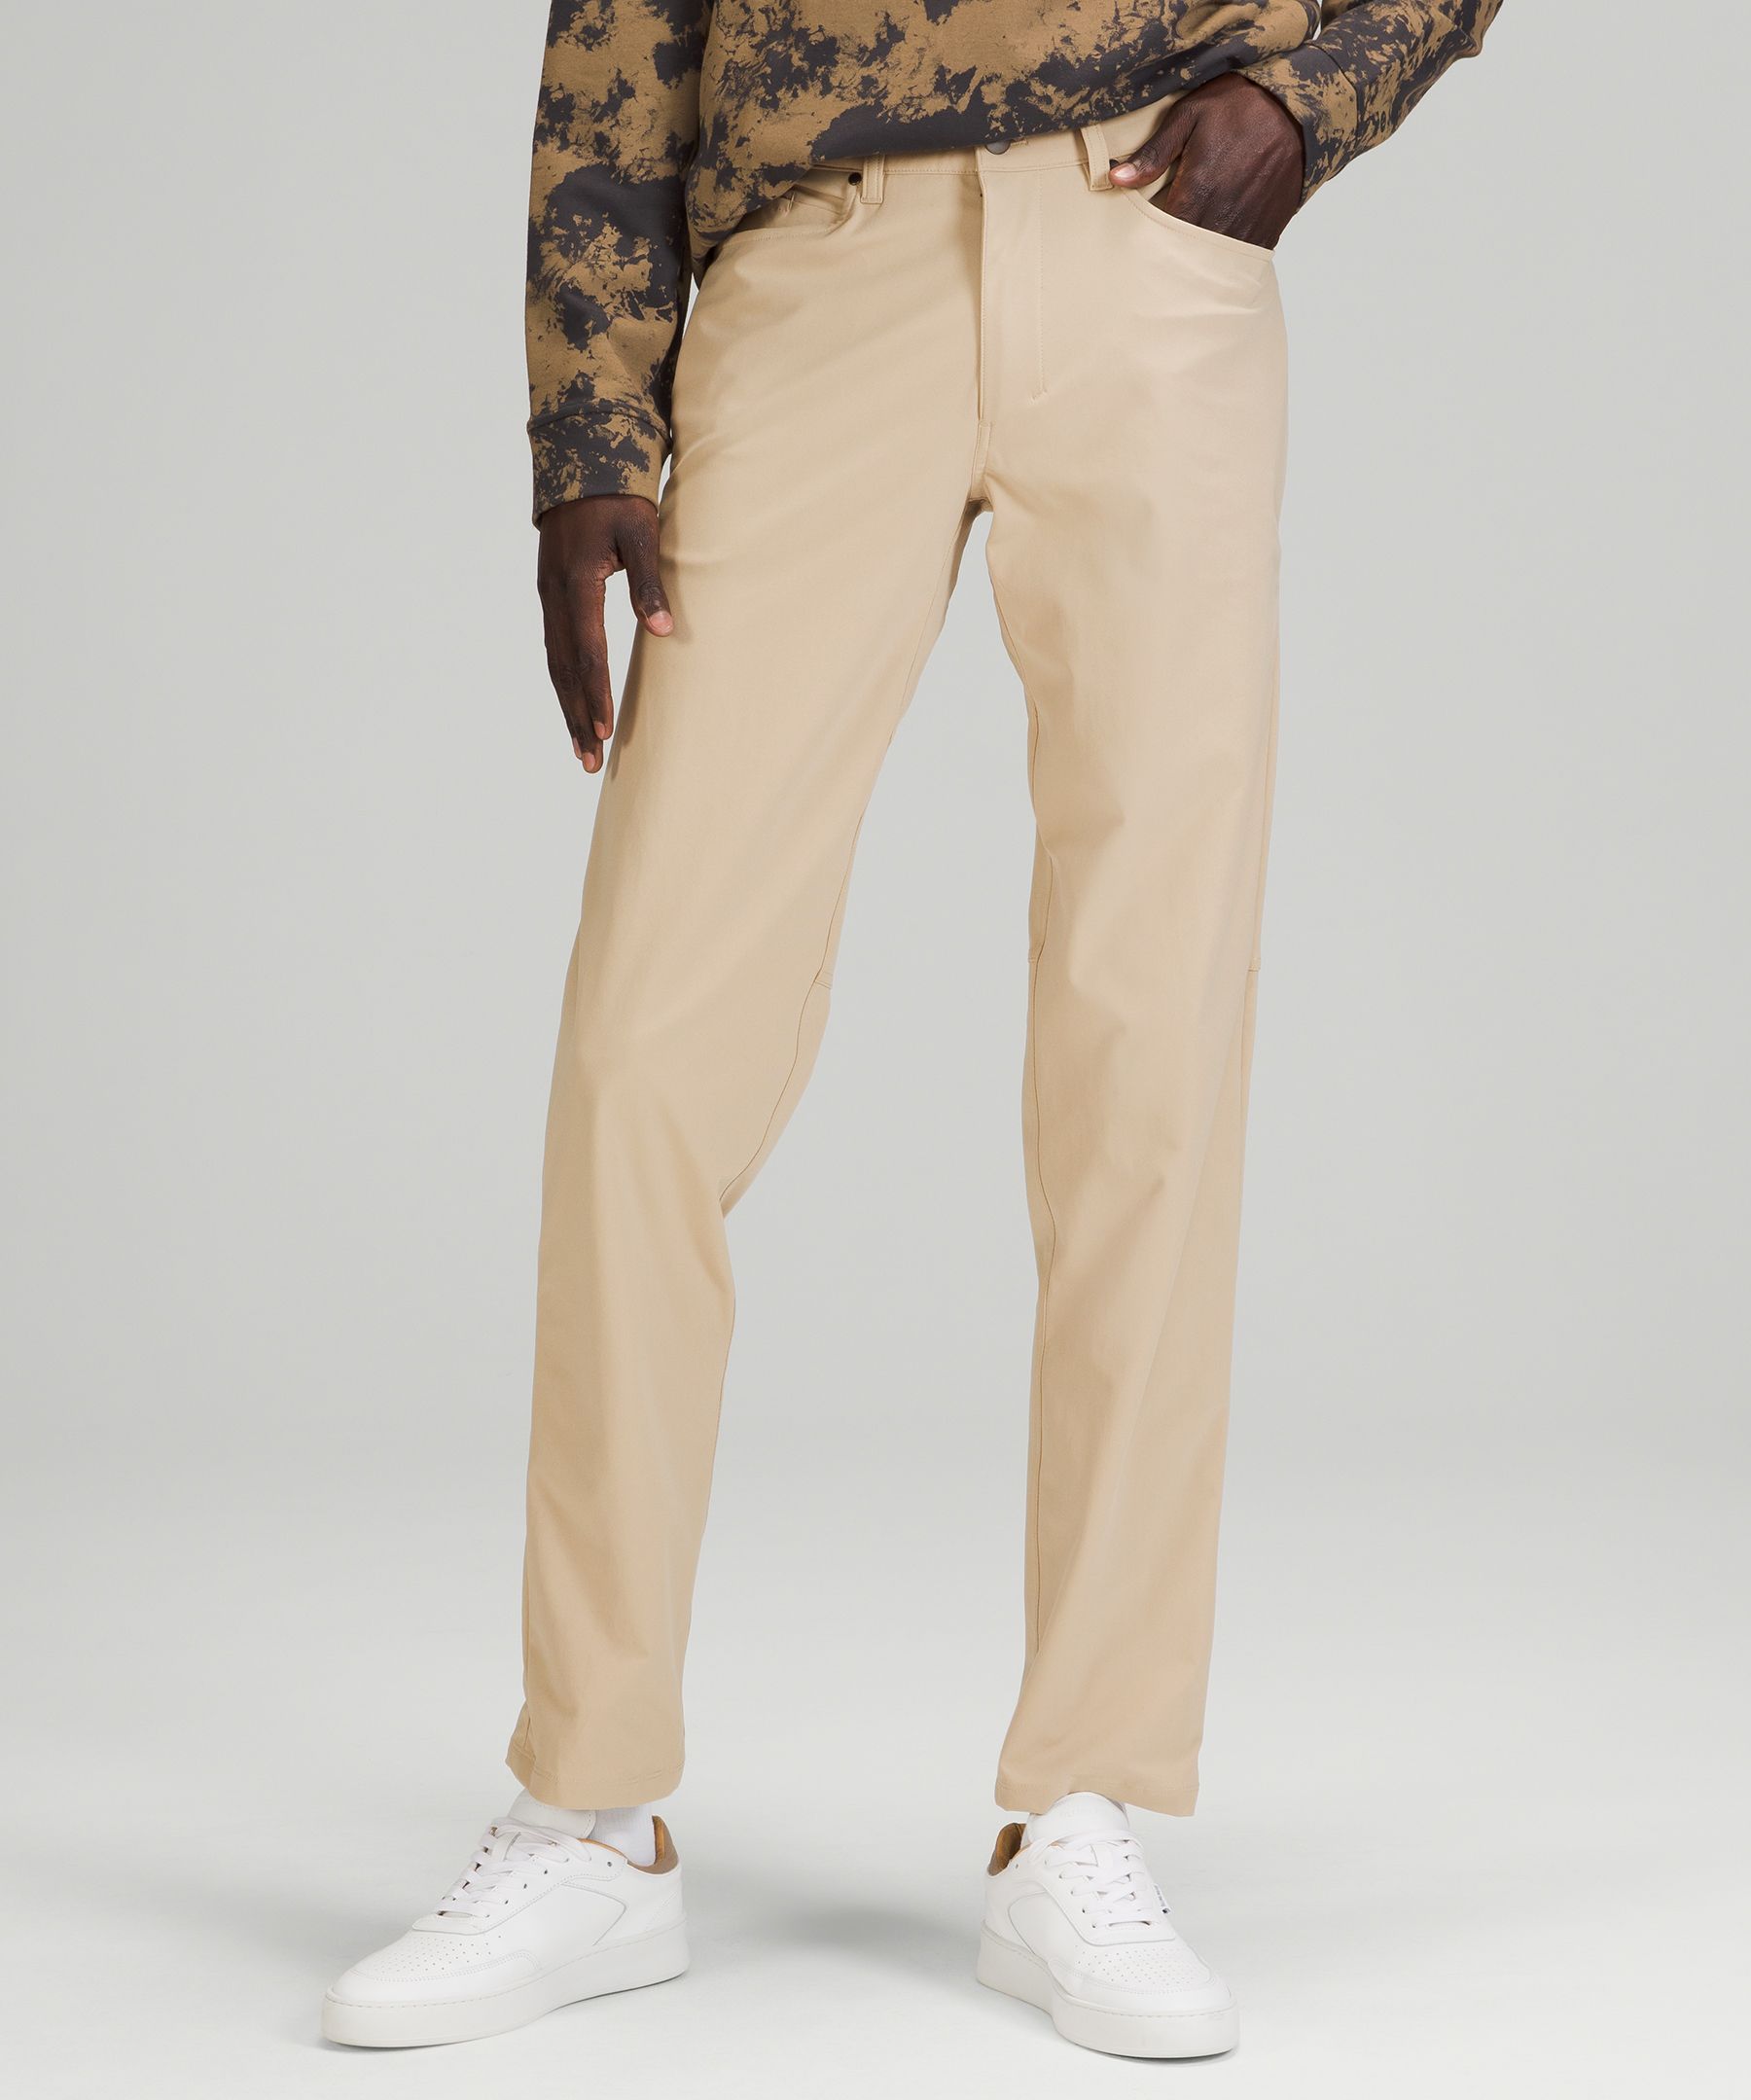 Lululemon ABC Pant Classic  Mens pants size chart, Clothes design, Slim  fit pants